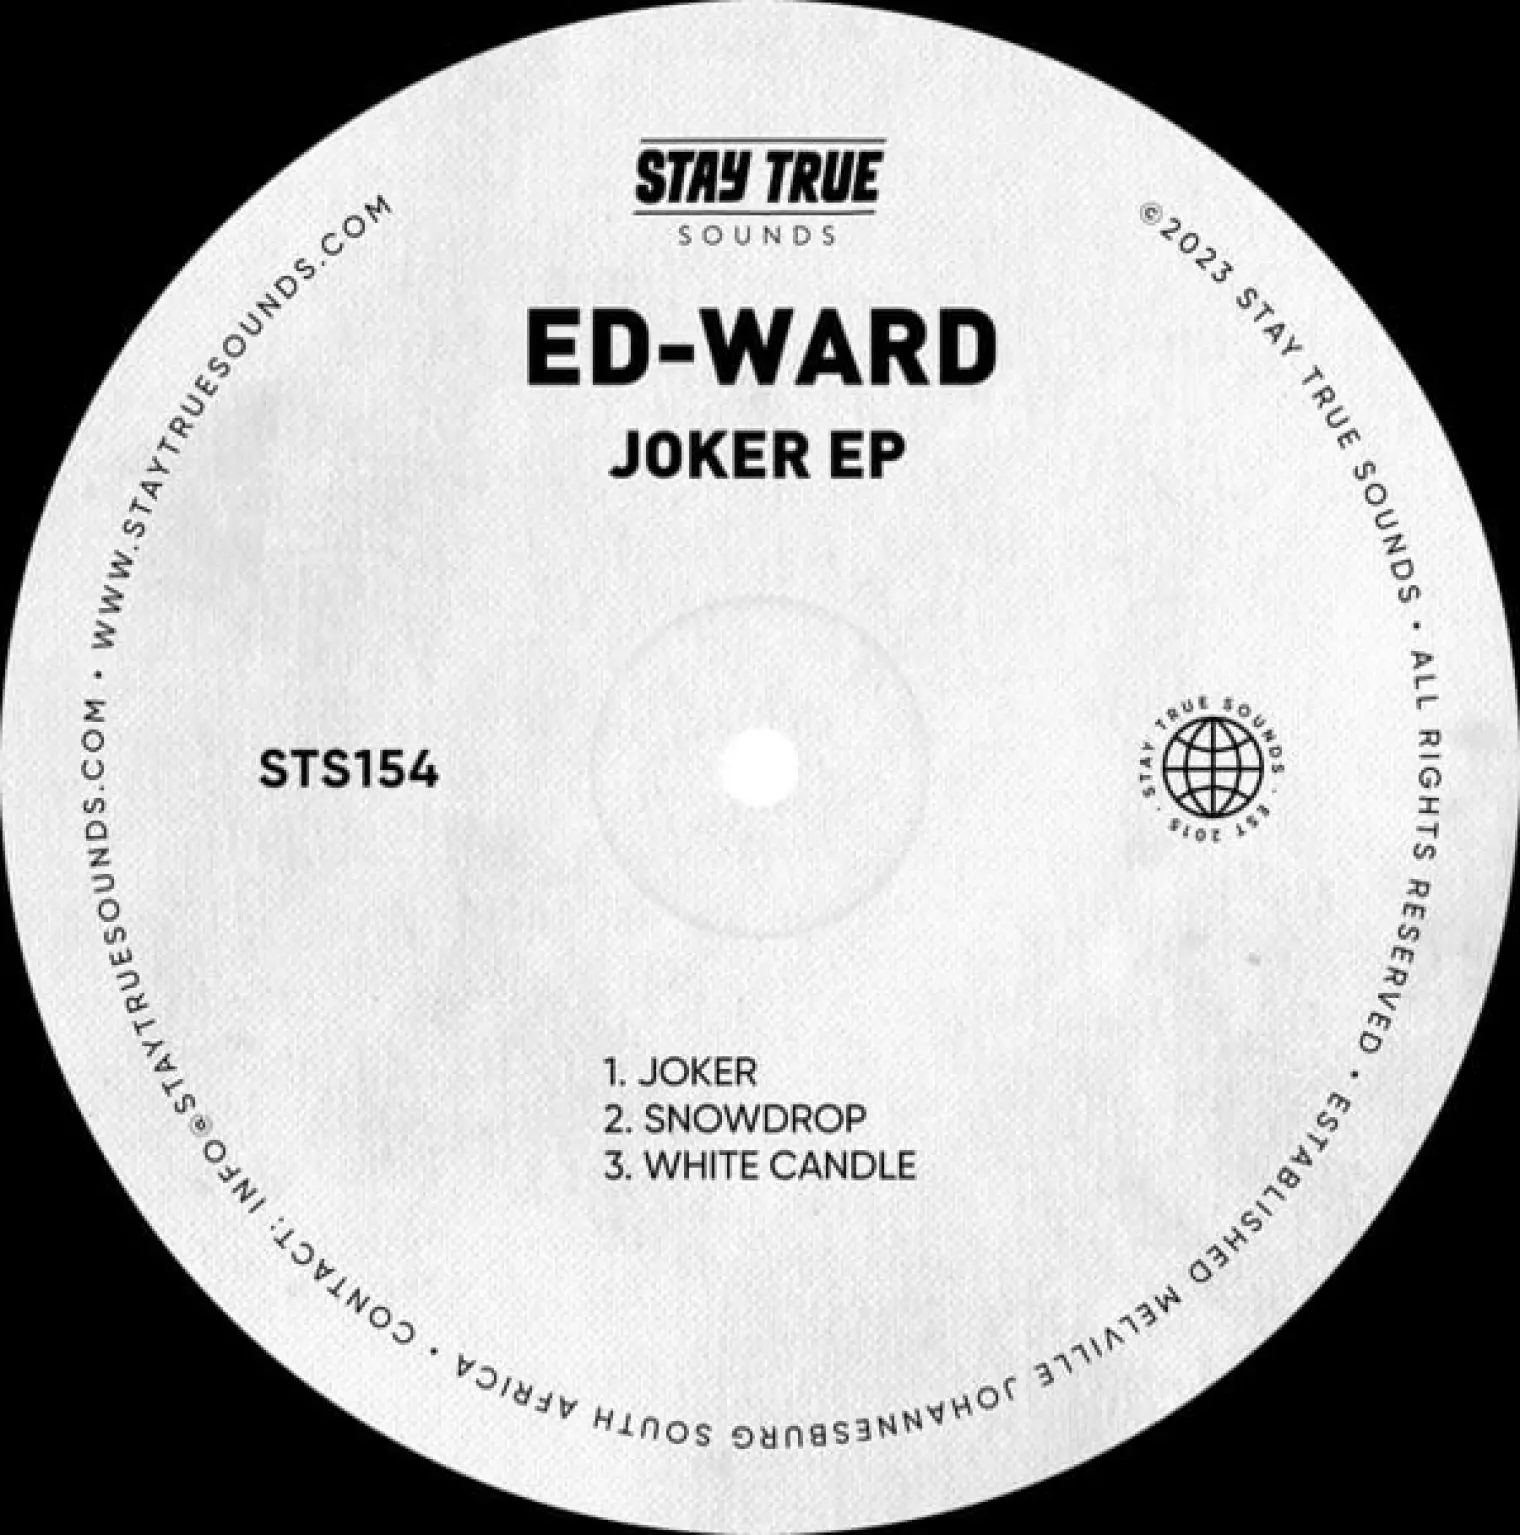 Joker EP -  Ed-ward 